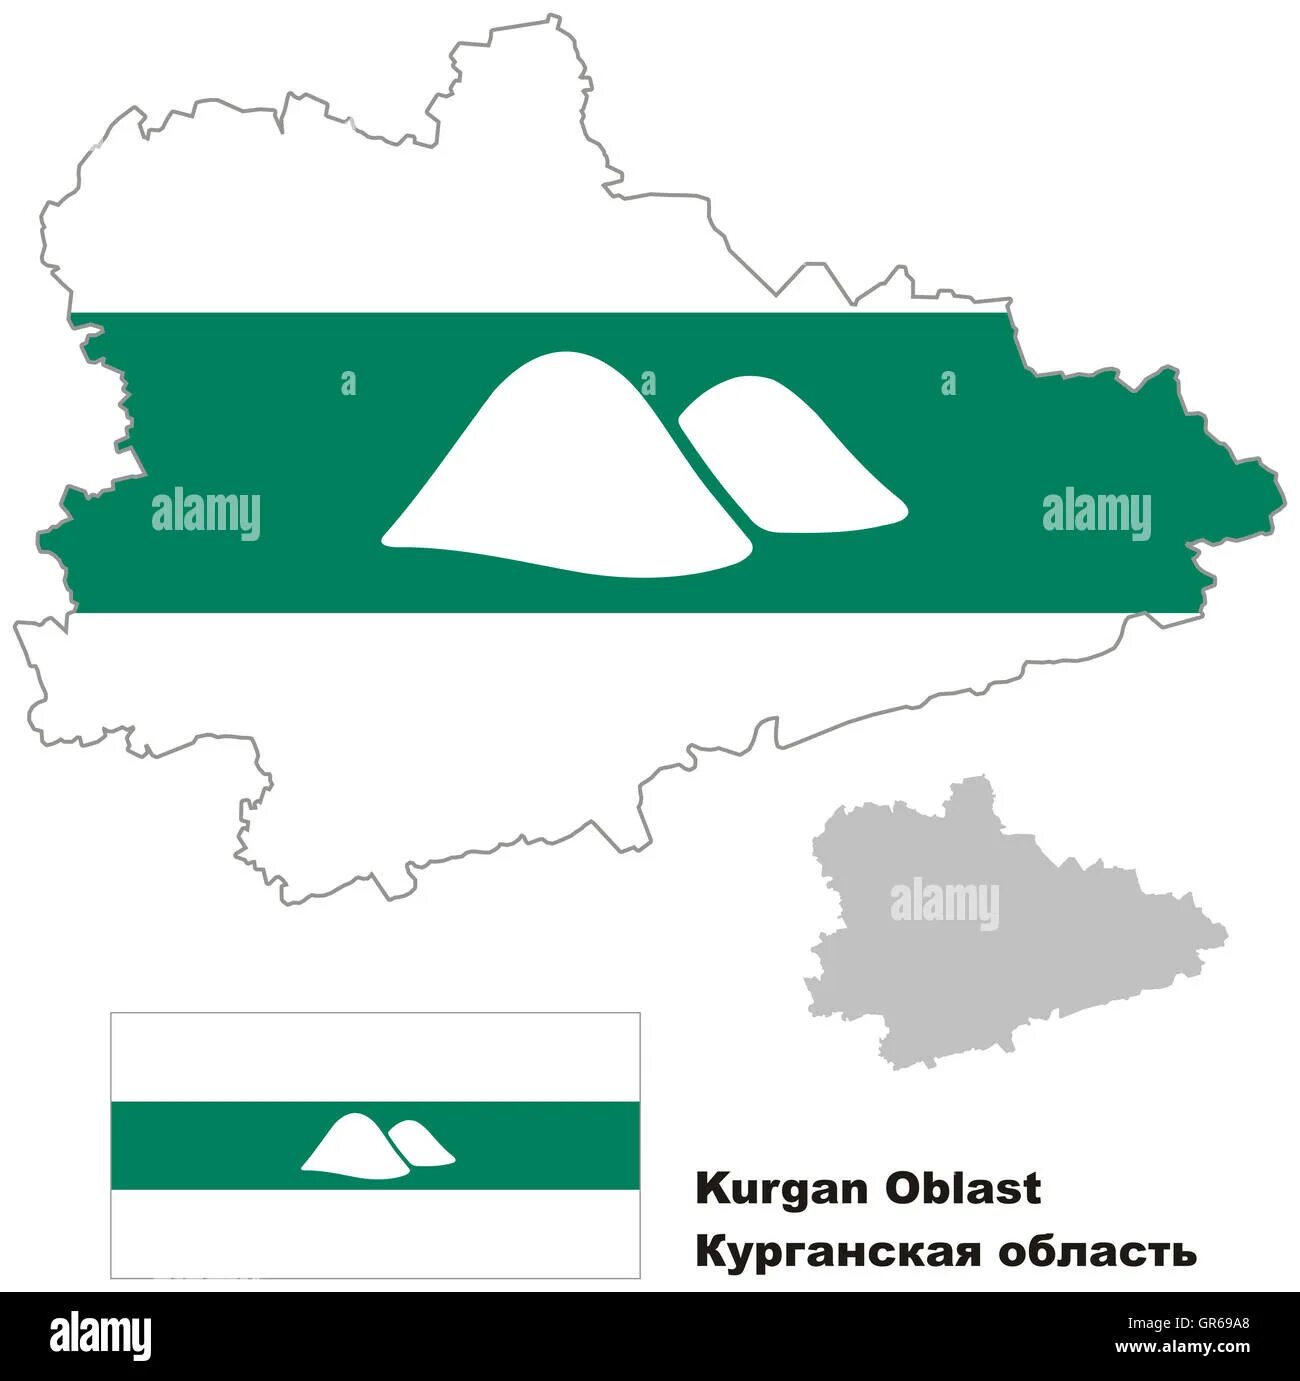 Курганская область на карте россии с городами. Курганская область вектор. Очертания Курганской области. Карта Курганской области контур. Флаг Курганской области.